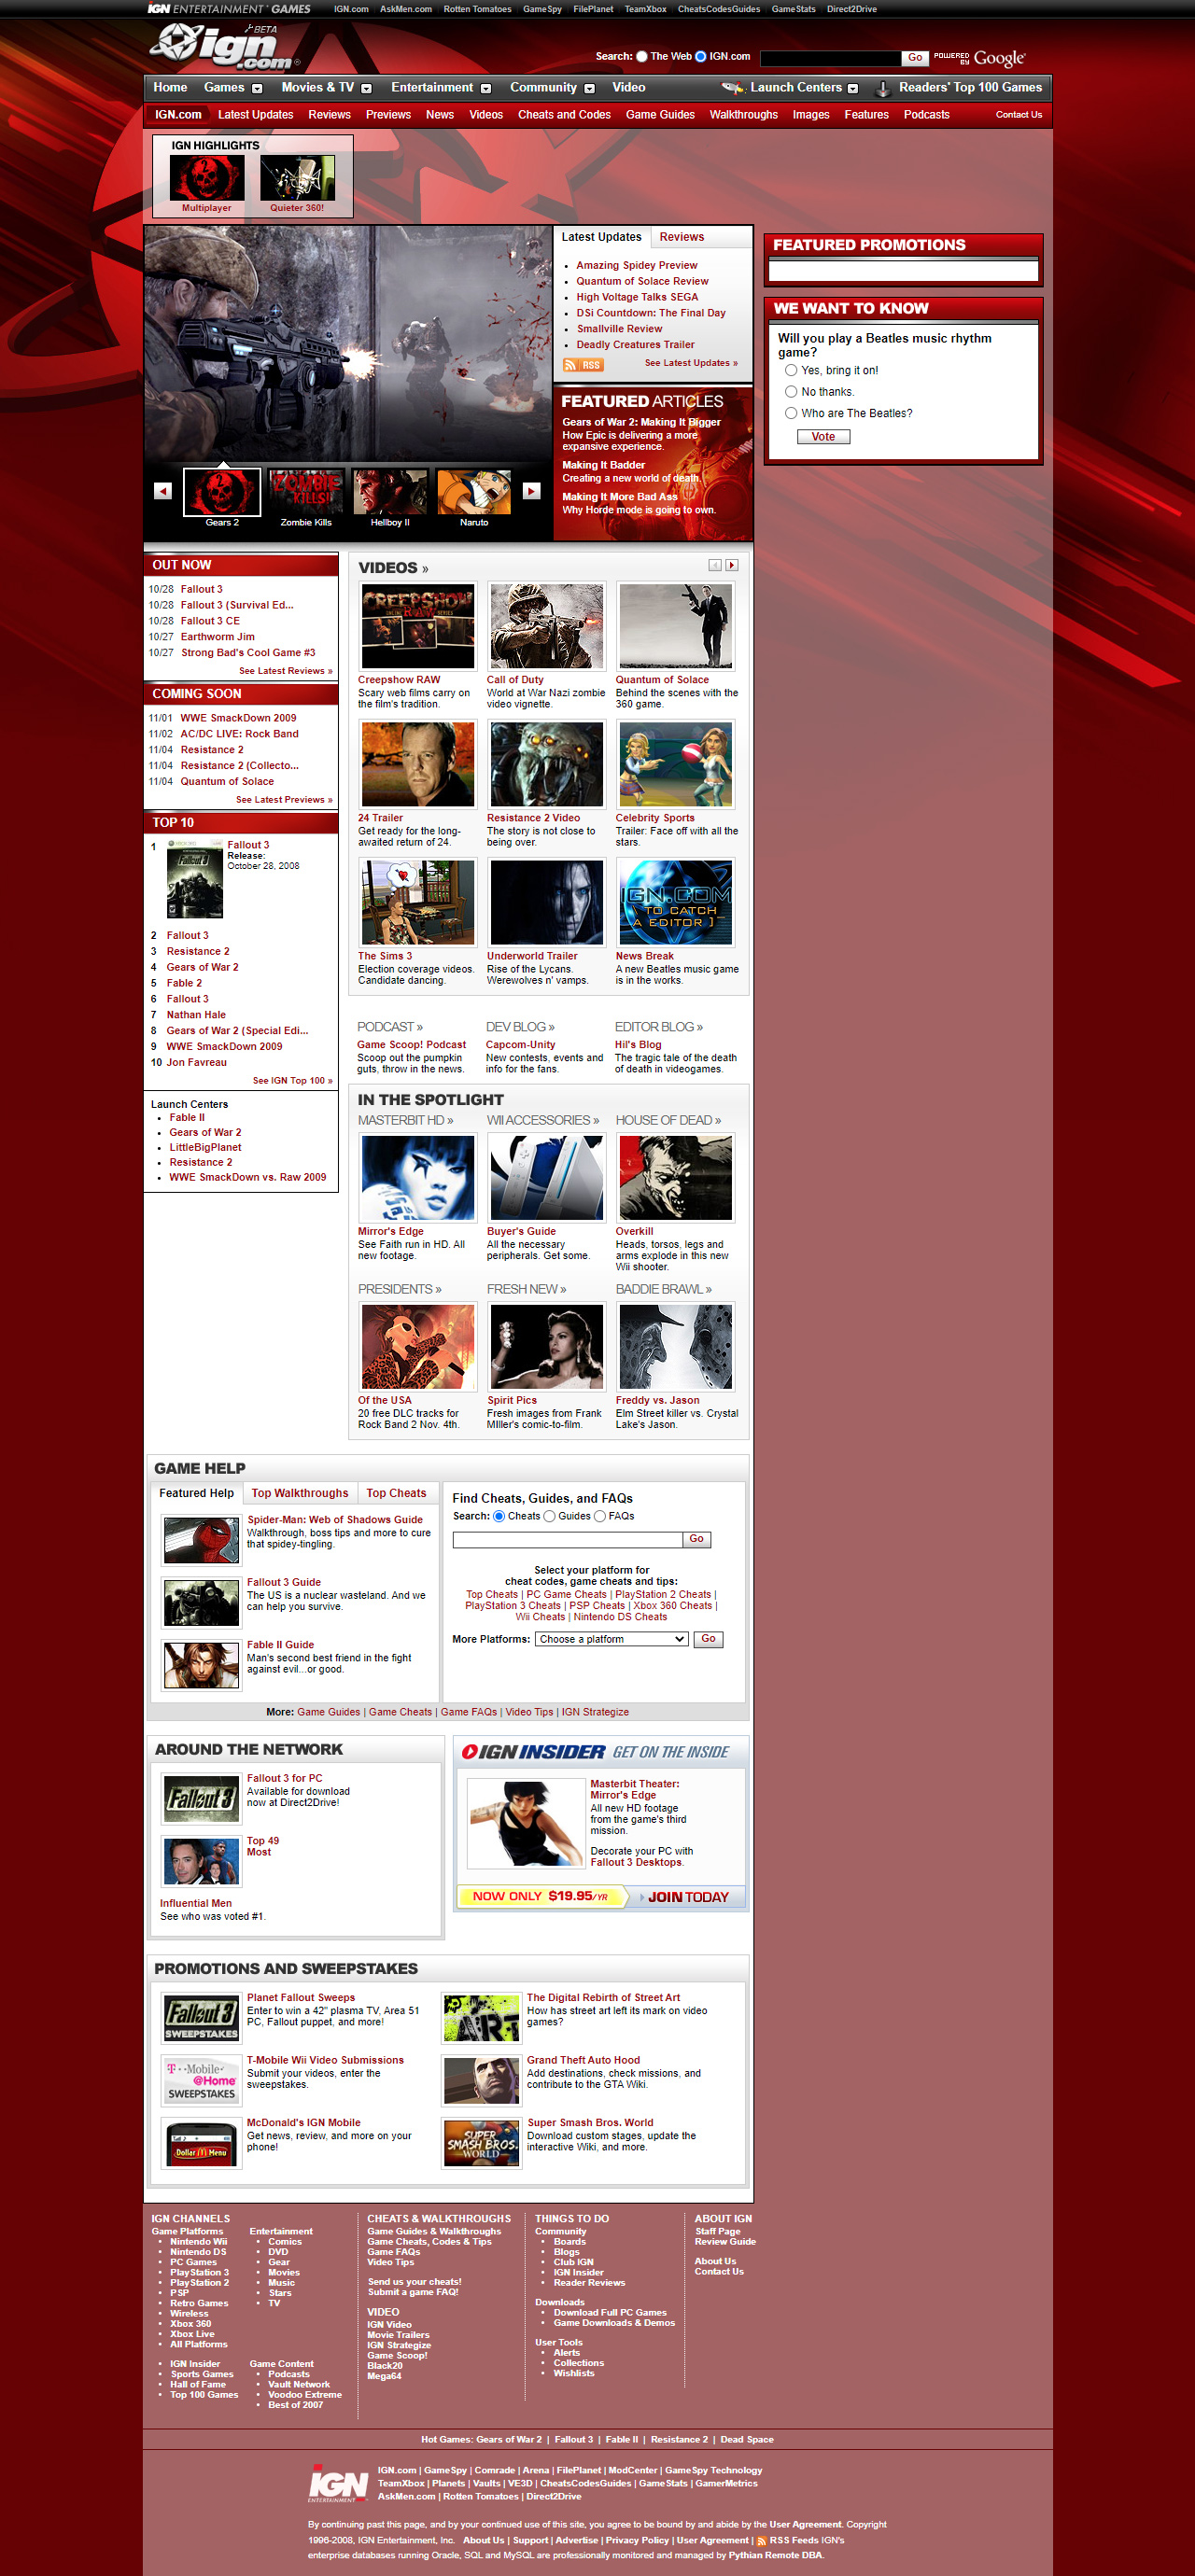 IGN in 2008